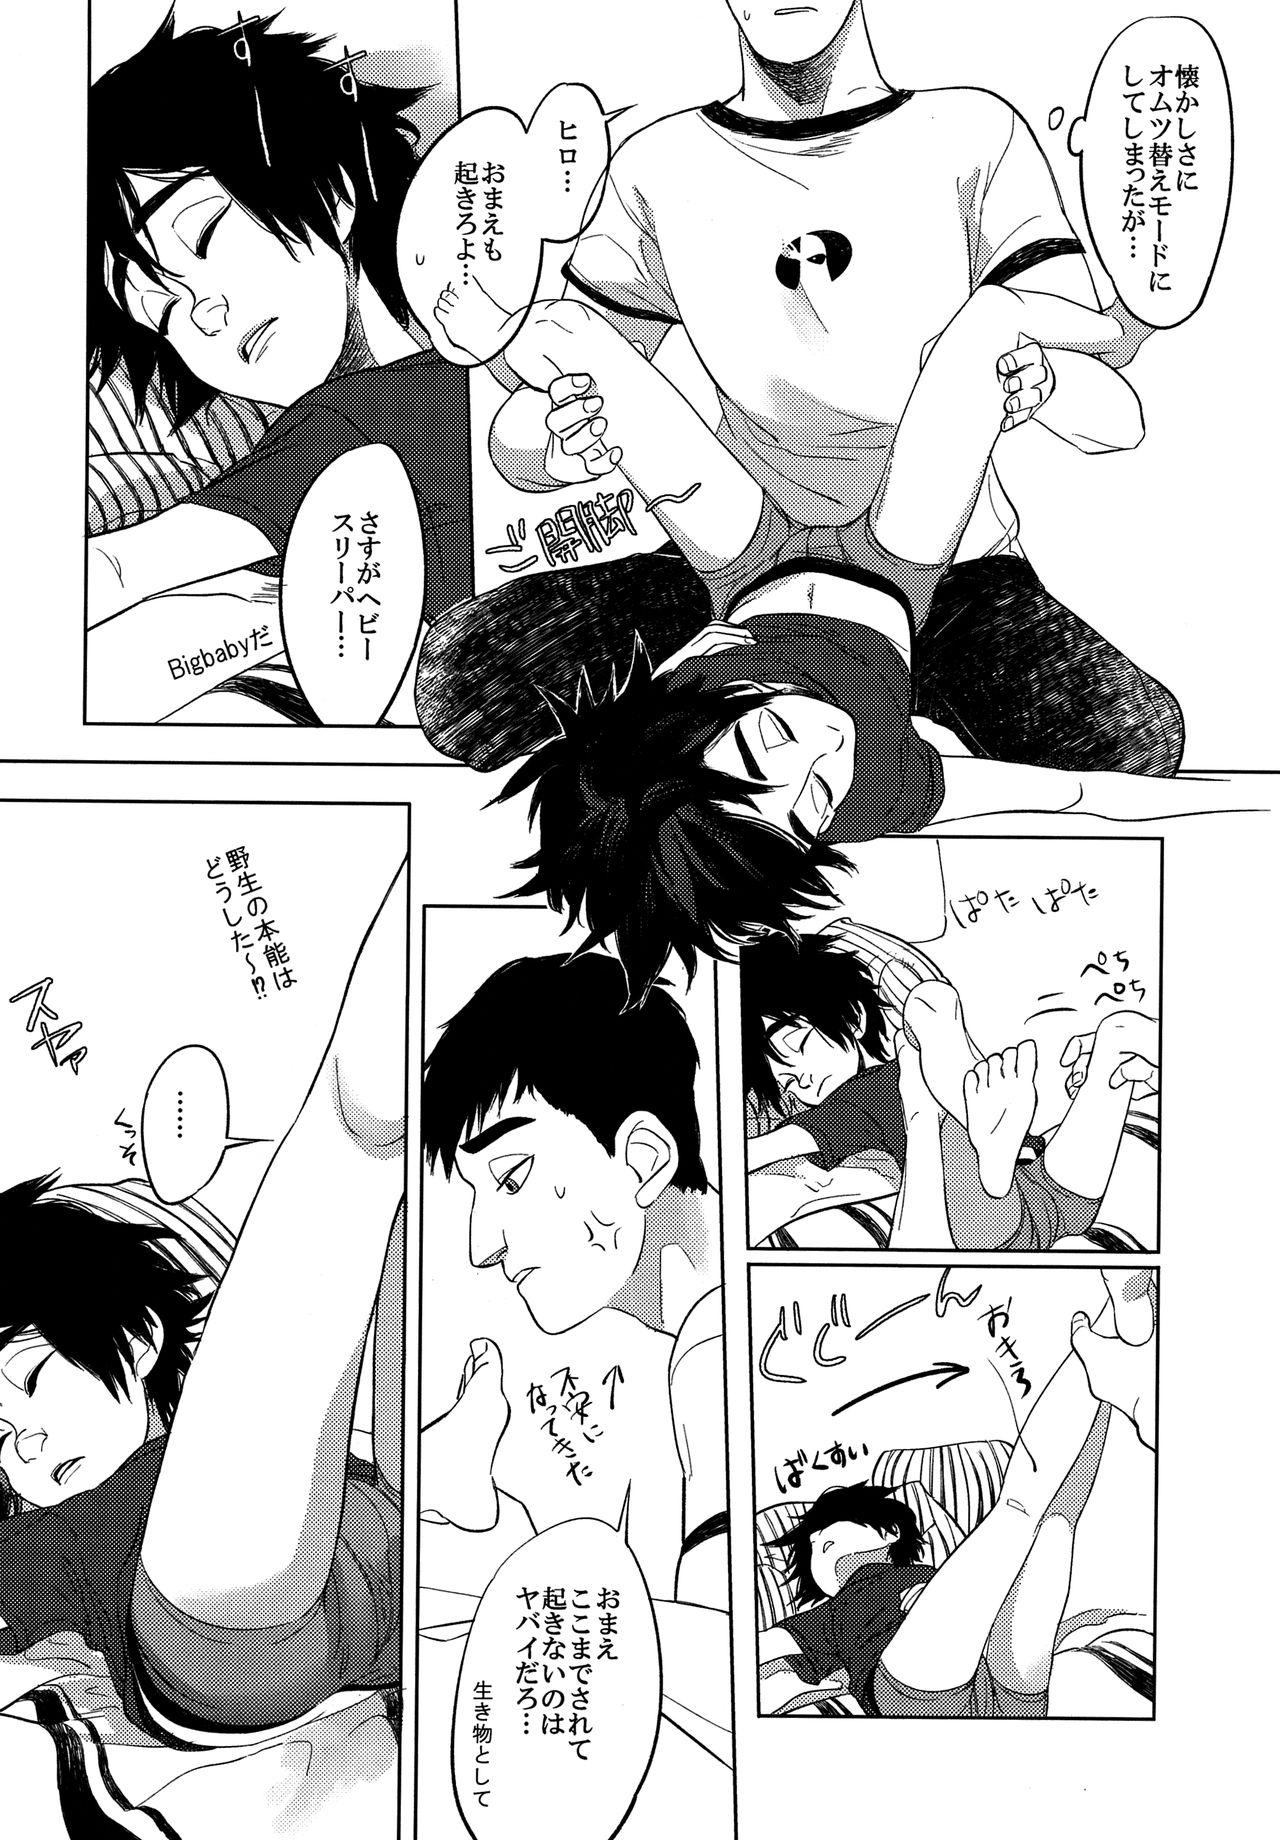 Gaybukkake Hiro's 14 - Big hero 6 Foot Fetish - Page 5